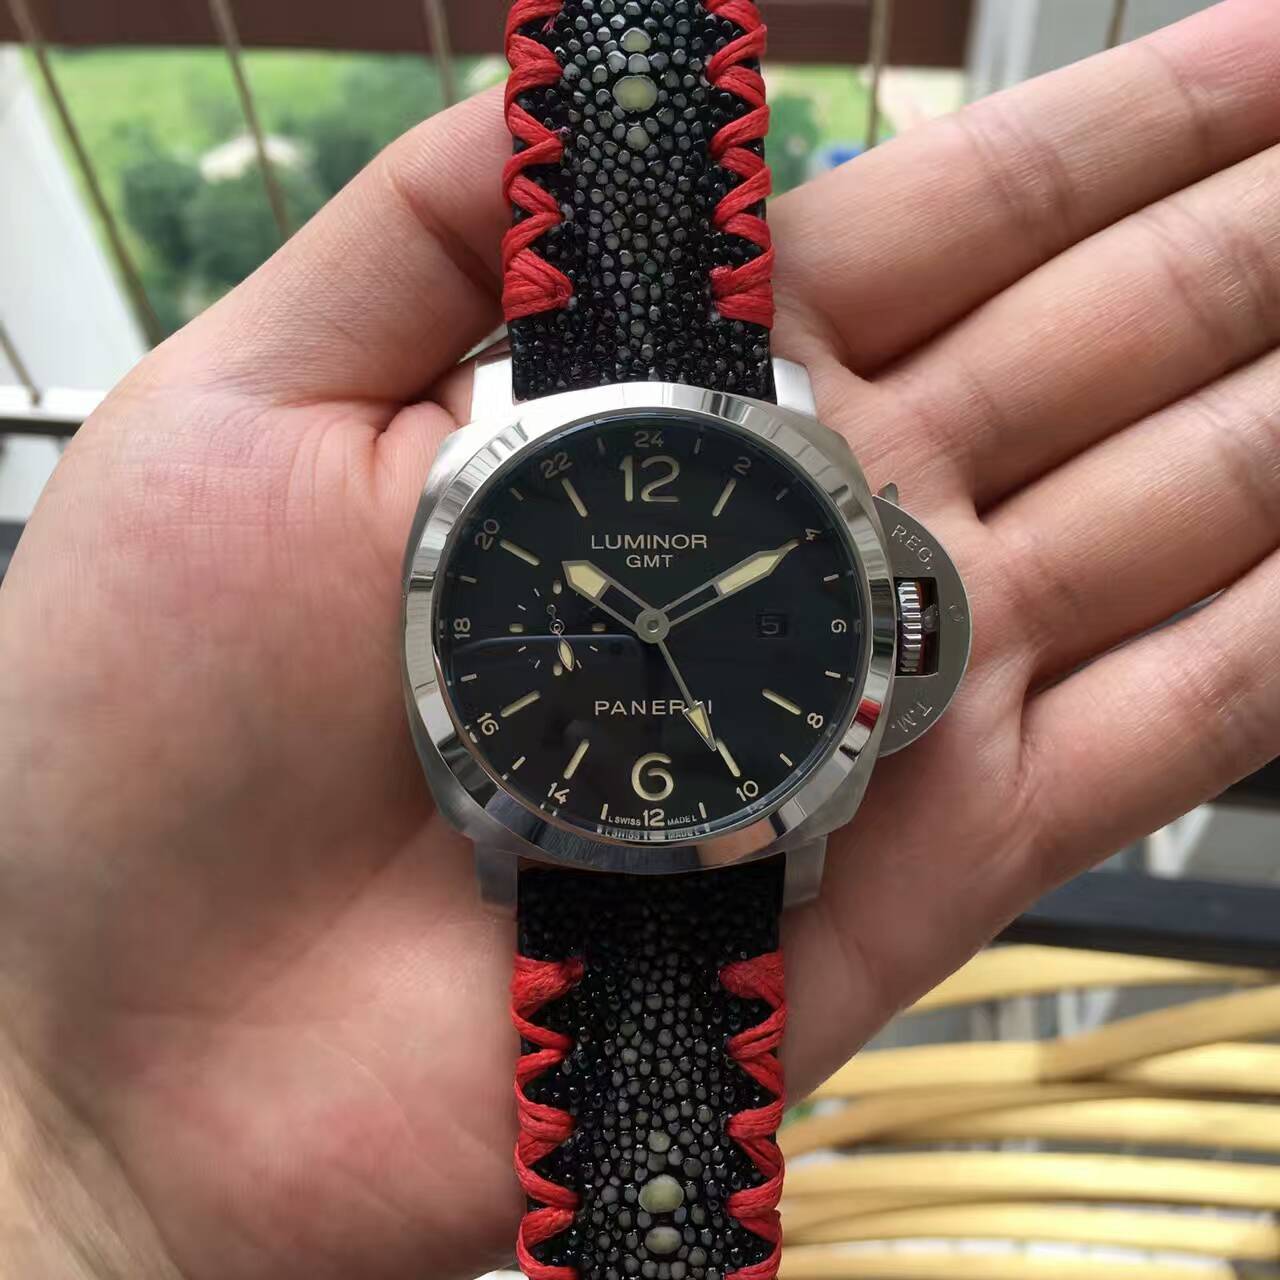 3A沛納海 魔鬼魚腕錶 反光錶殼 海鷗機芯 寬大指針 生活防水  手錶品牌